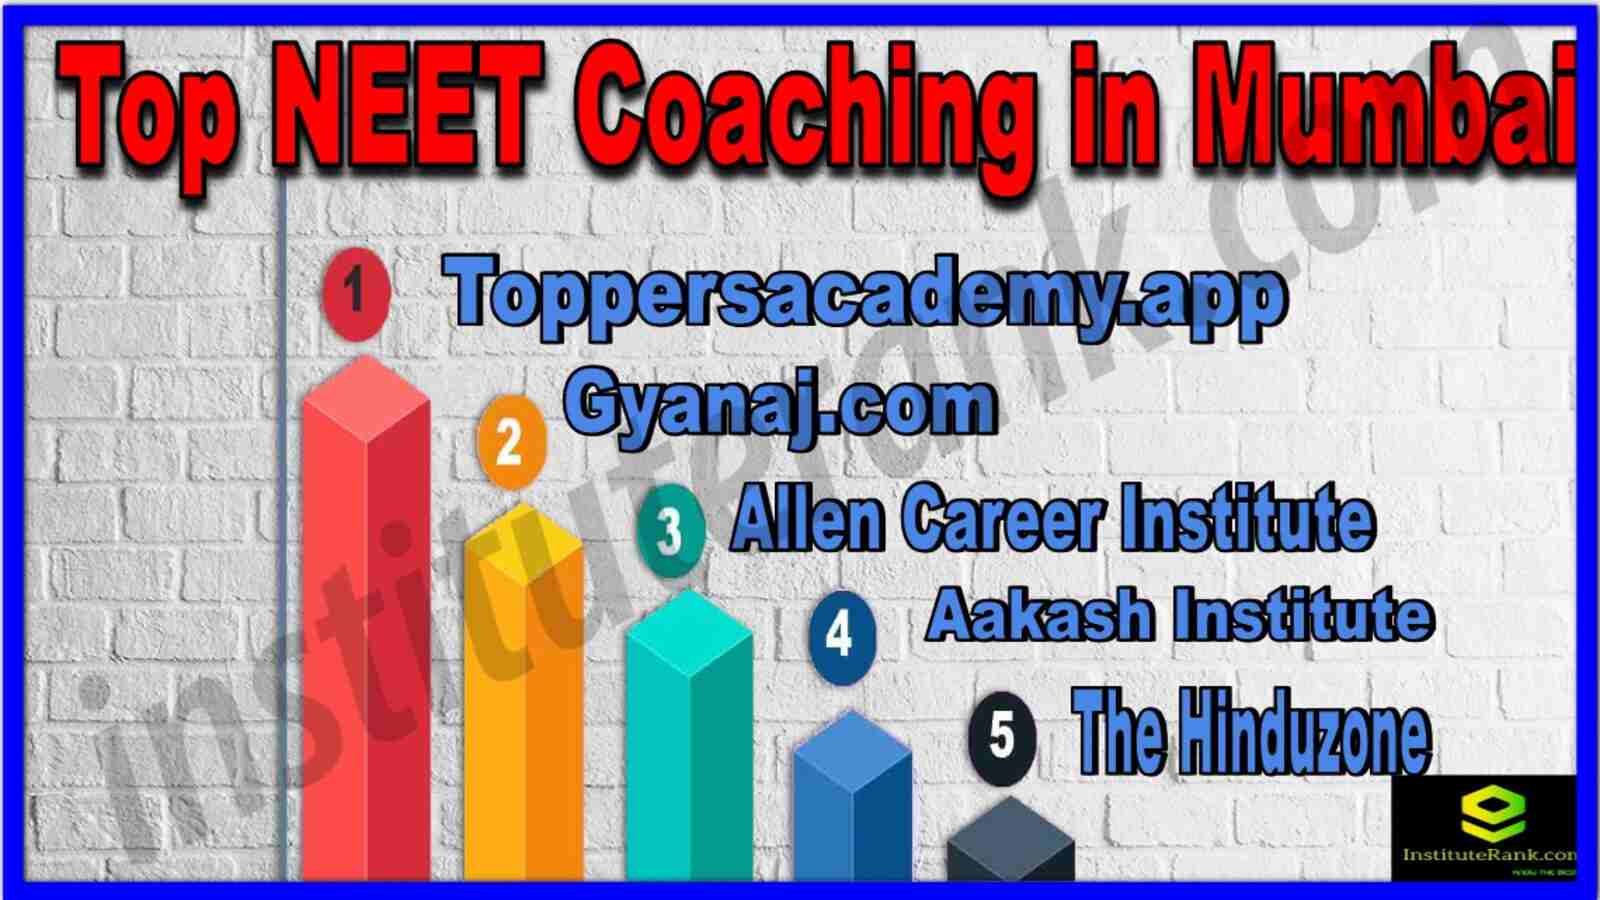 Top 10 NEET Coaching in Mumbai